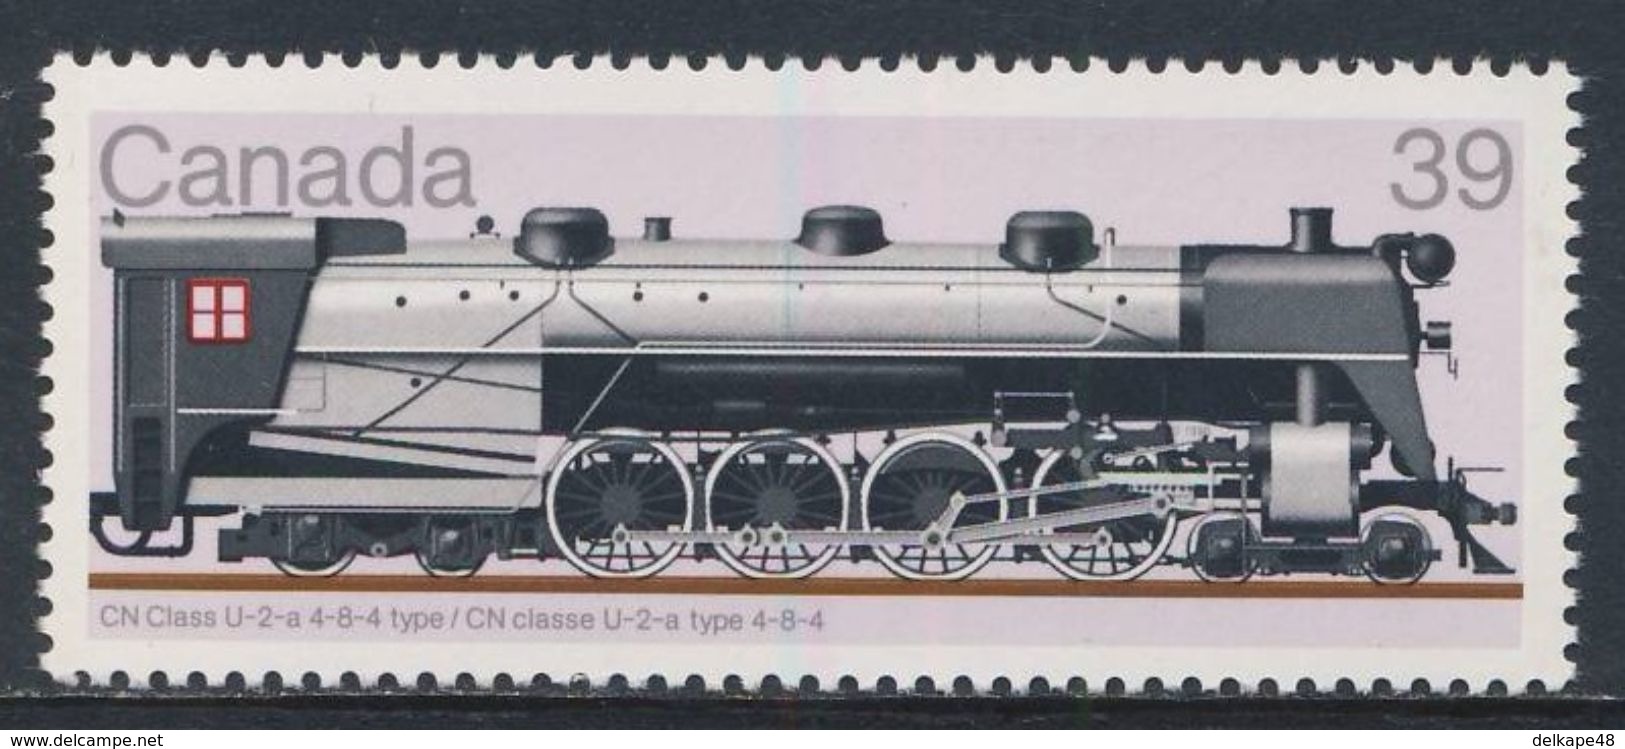 Canada 1986 Mi 1020 ** CN Class U-2a 4-8-4  //  CN Klasse U2a 4-8-4 - Locomotives / Lokomotiven - Treinen